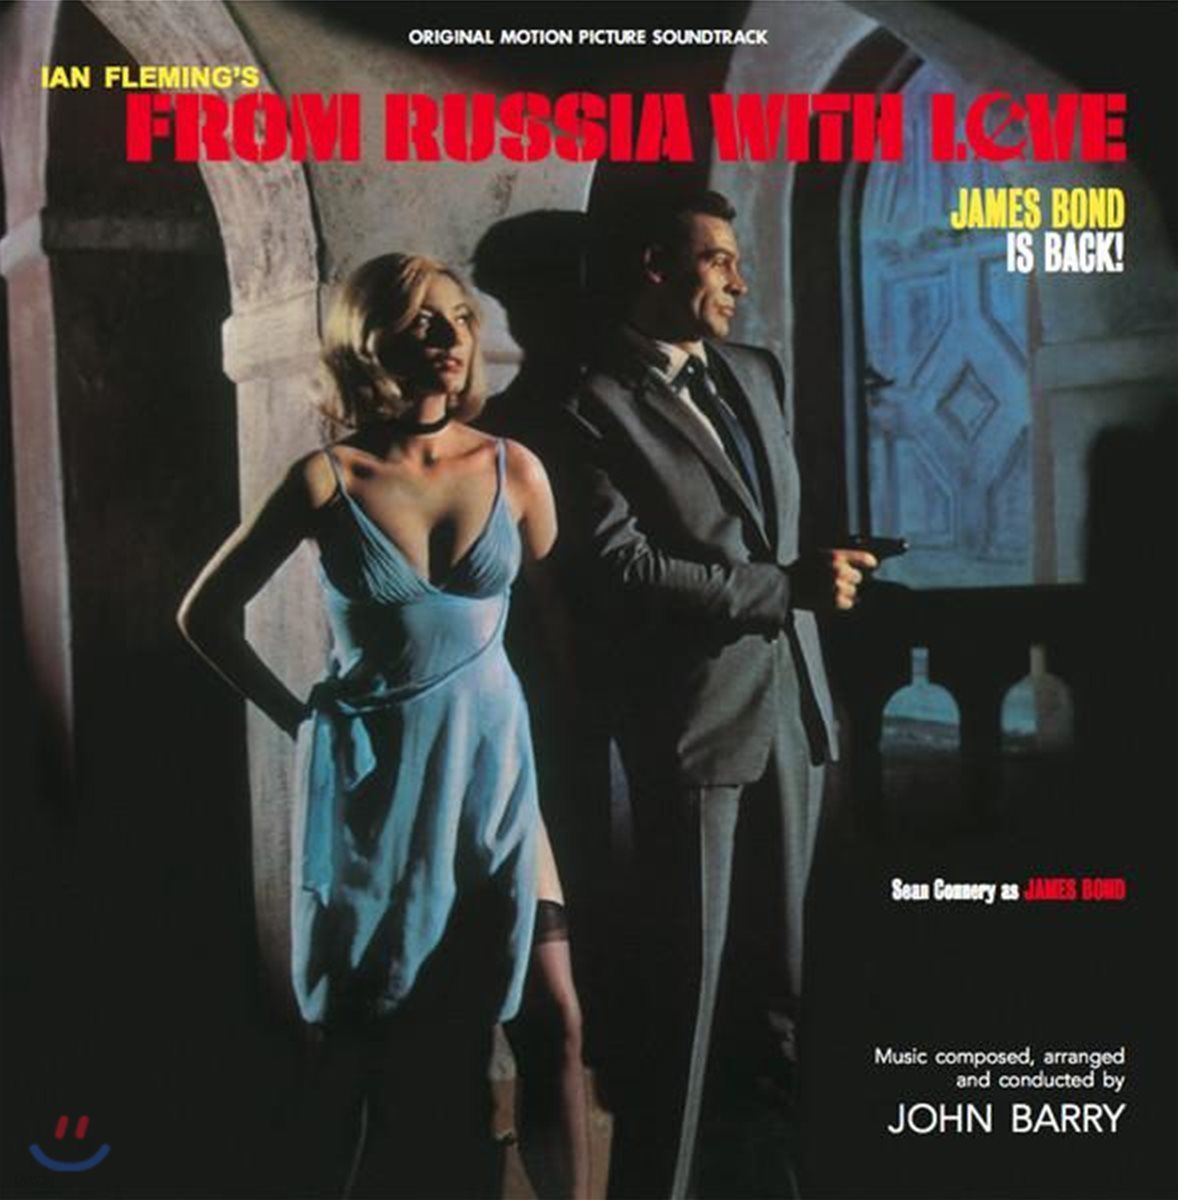 007 위기일발 영화음악 (From Russia With Love by John Barry) [블루 스카이 컬러 LP]